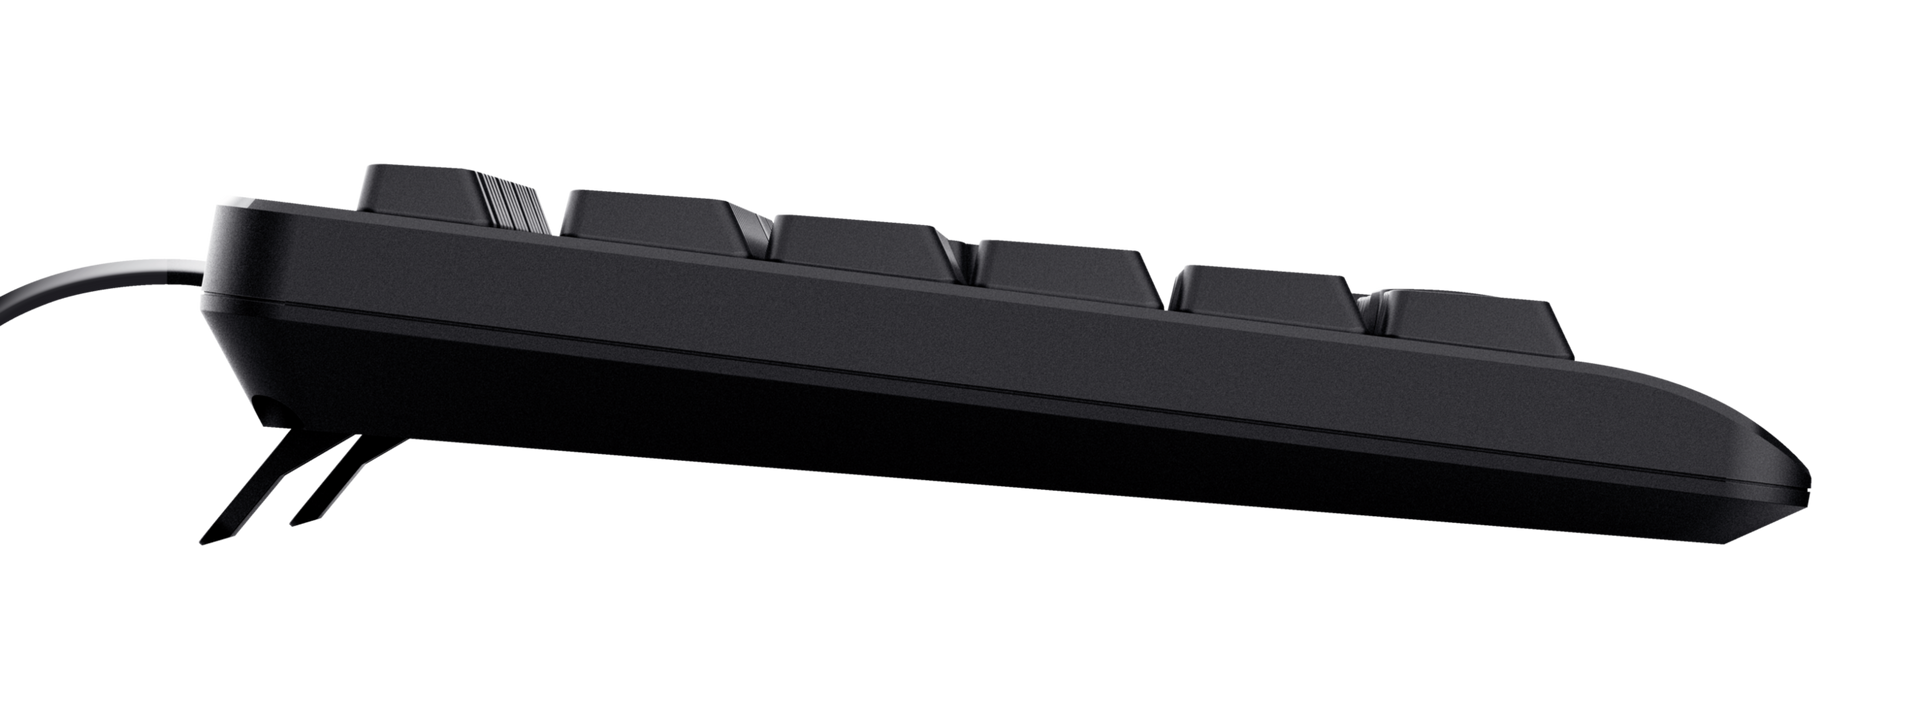 TK-150 Silent Keyboard-Side